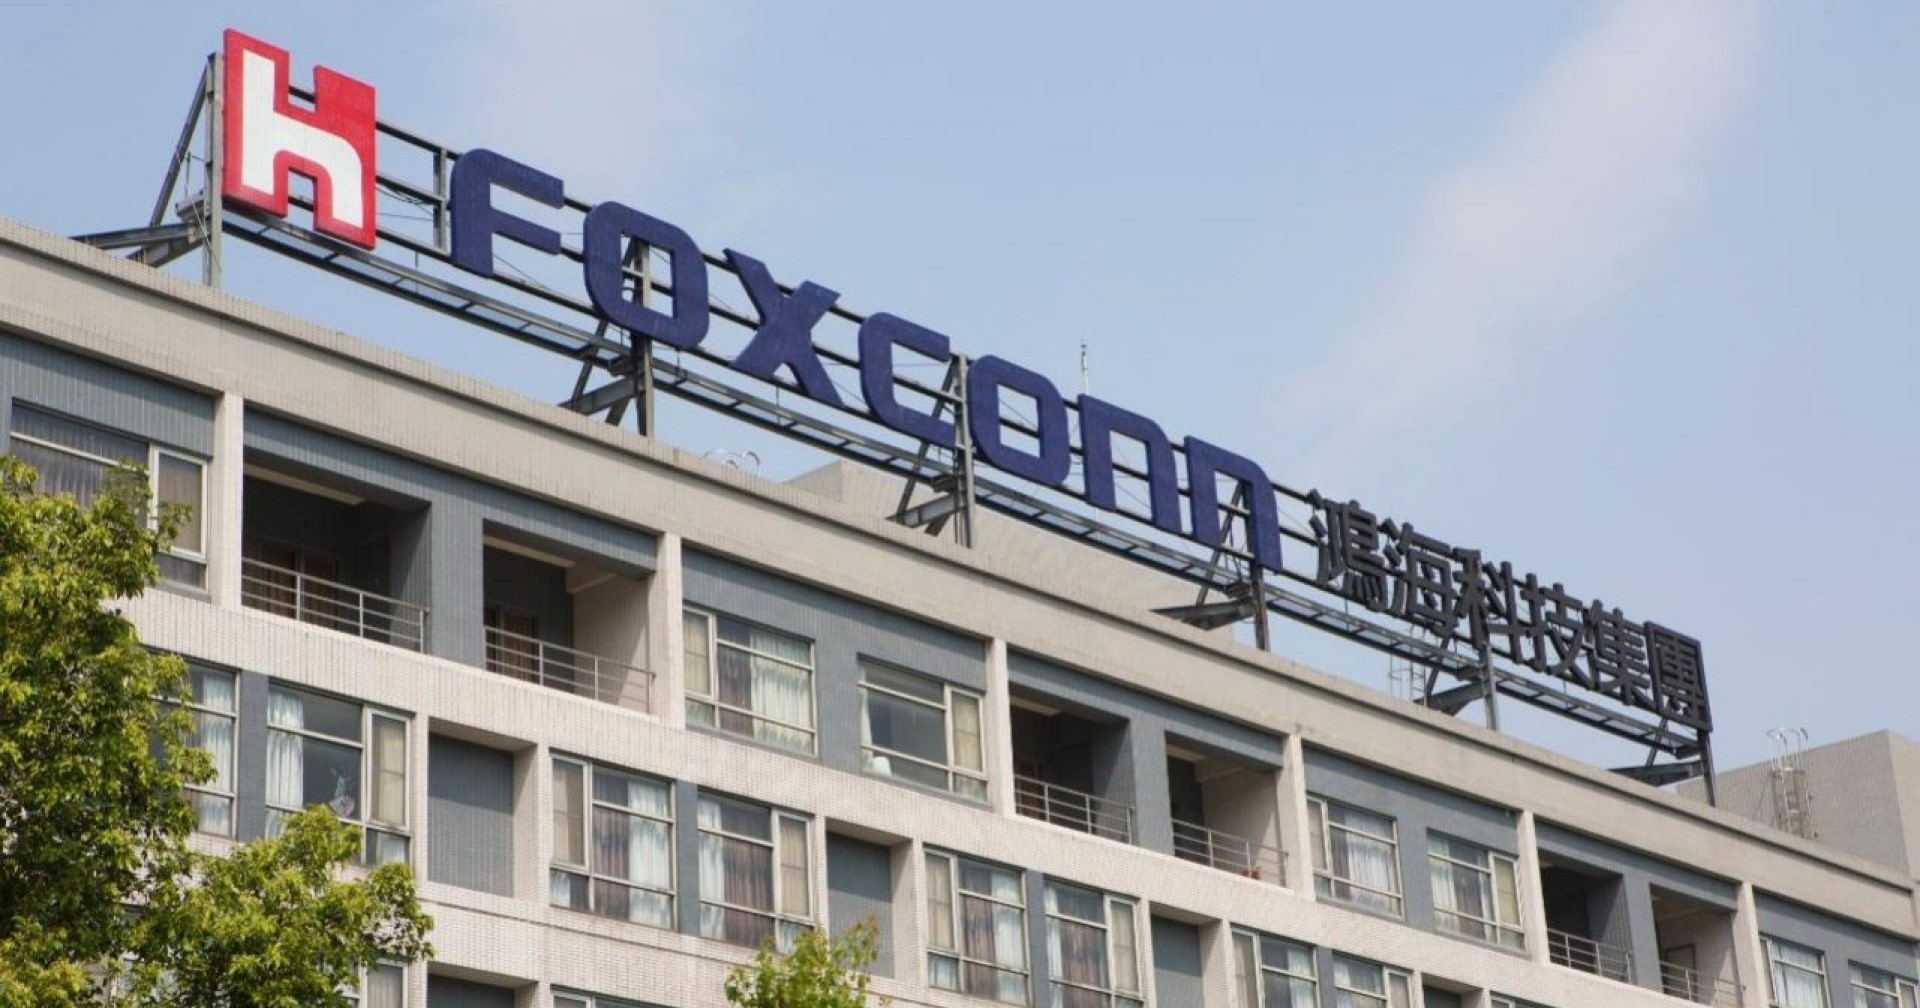 Global Times เผยรัฐบาลจีนเข้าตรวจสอบทางภาษีและการใช้ที่ดินของ Foxconn